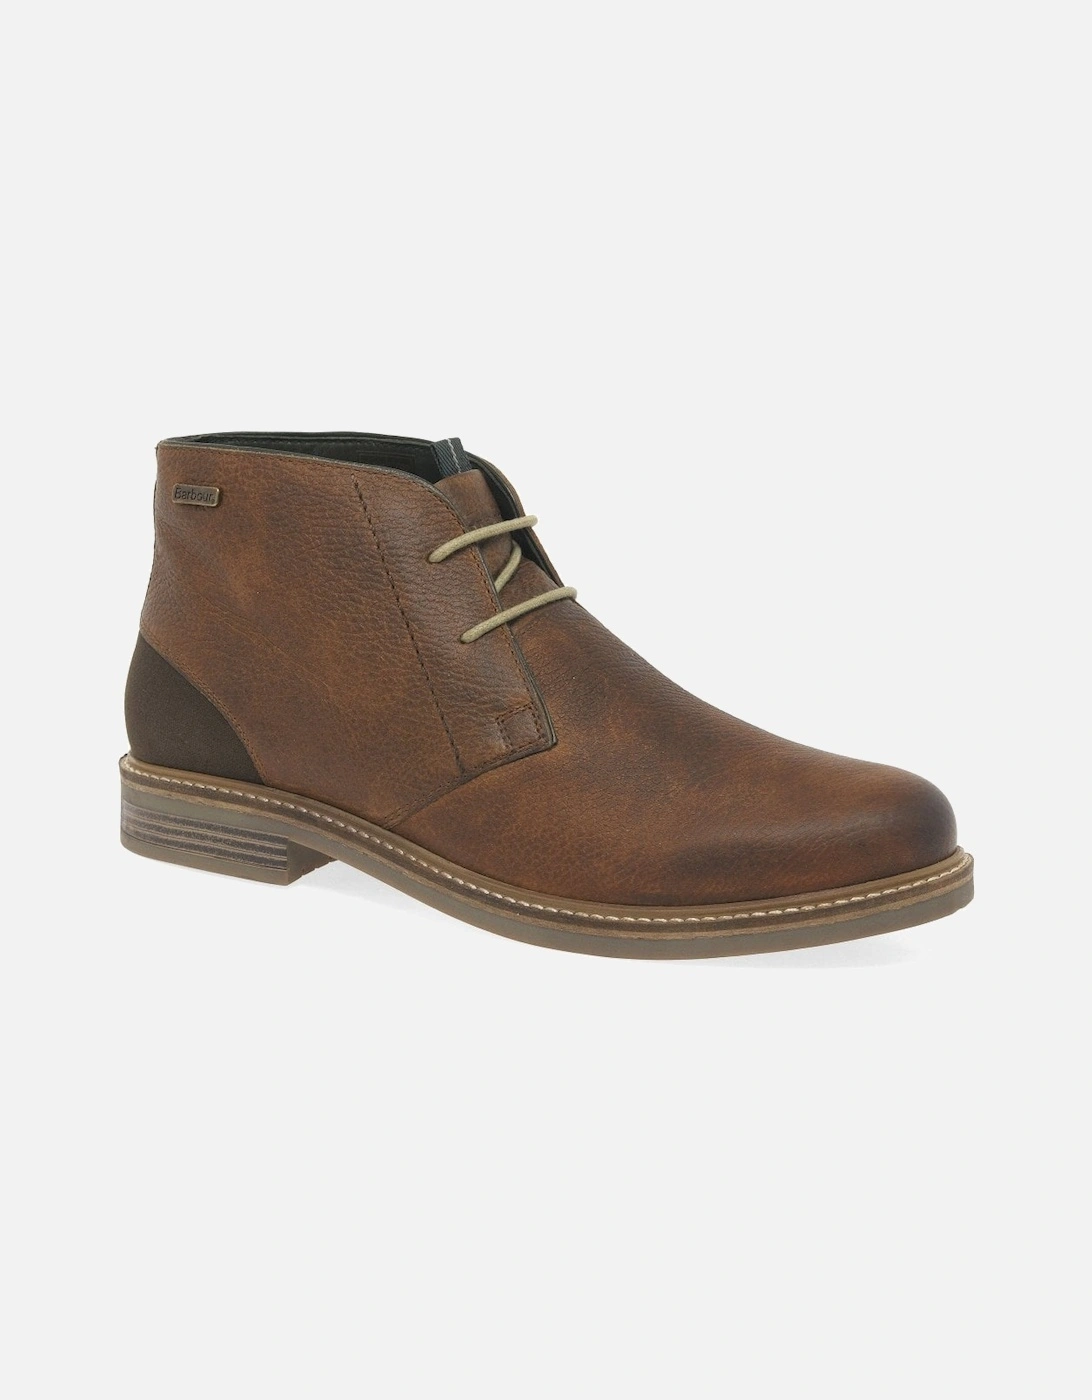 Readhead Mens Leather Chukka Boots, 8 of 7